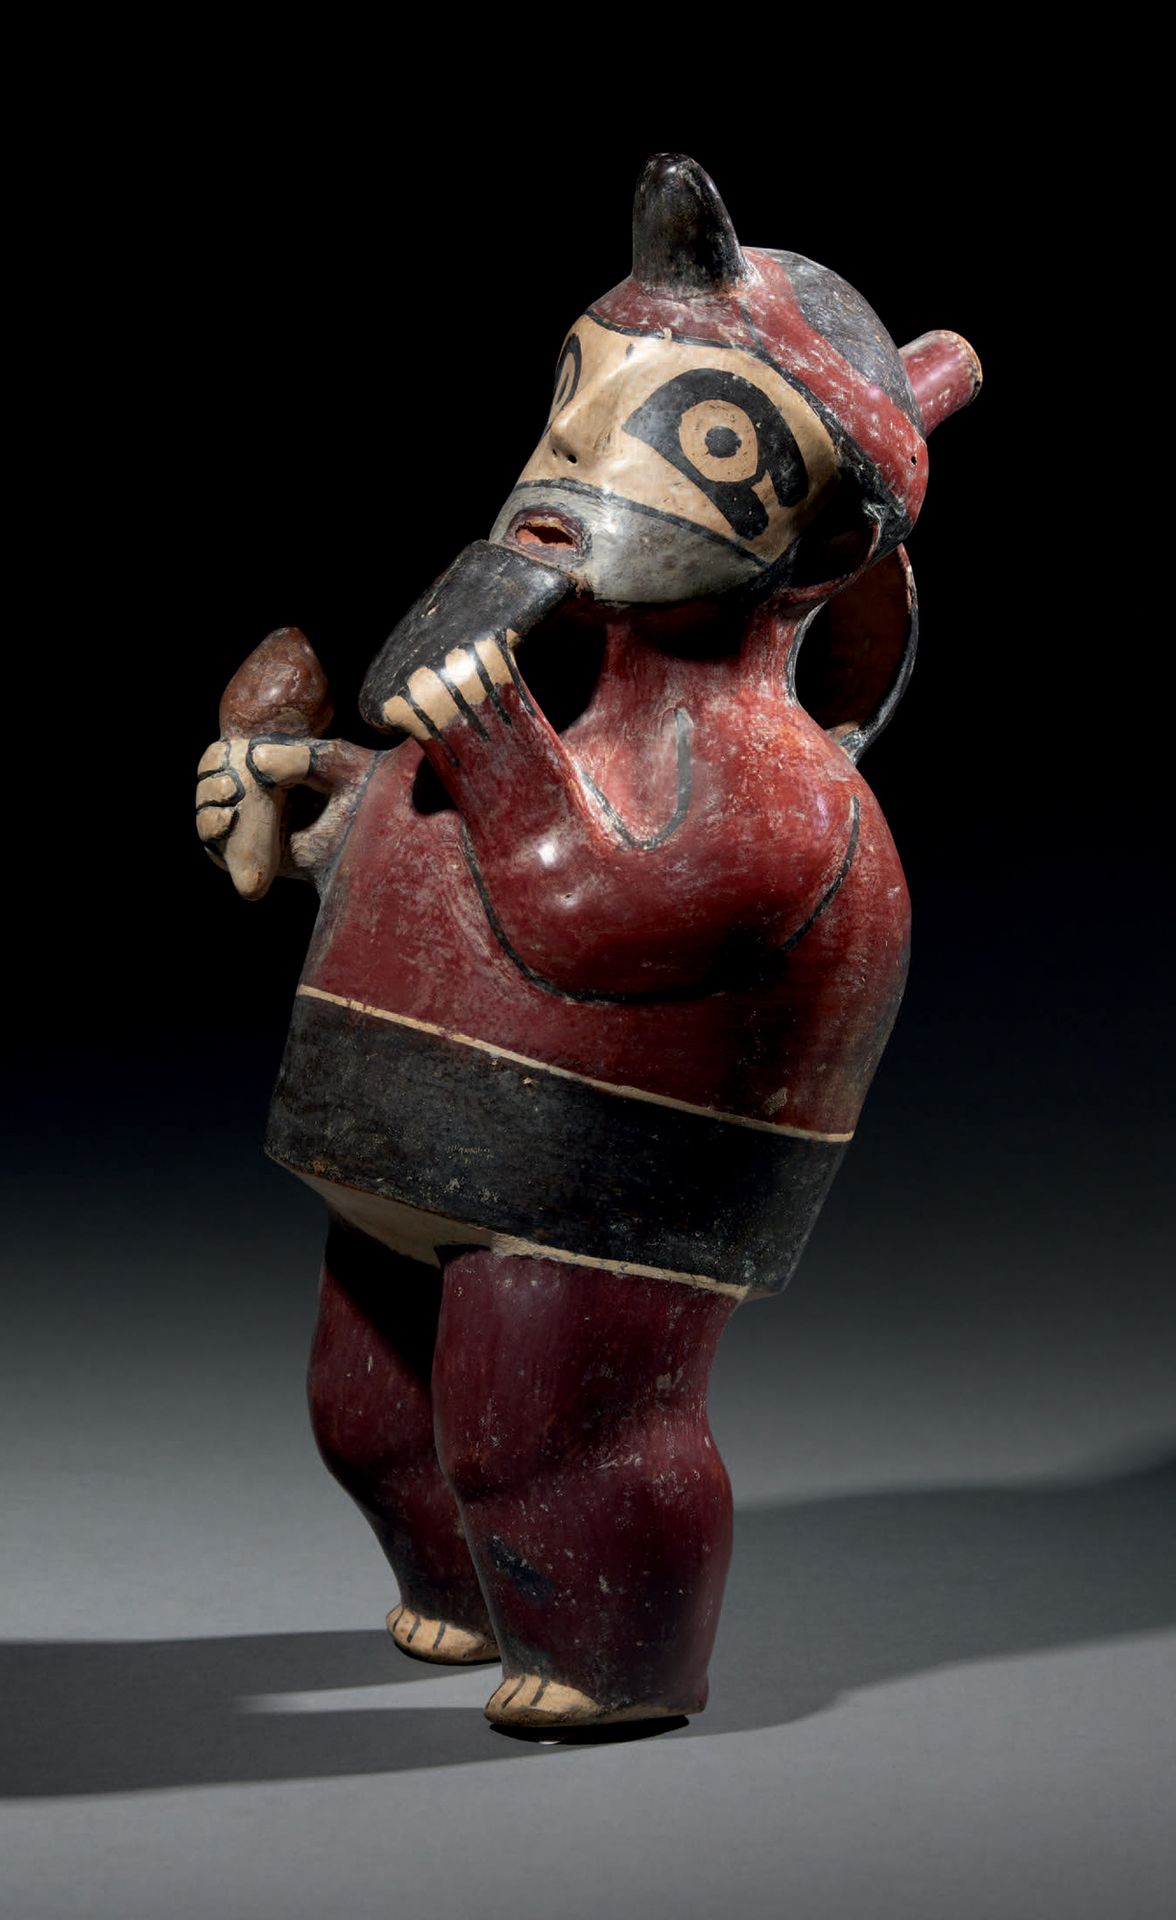 Null Ɵ 花瓶
描绘了一个吹板笛的音乐家
纳斯卡文化，秘鲁南部
中古时期，公元200-600年
红棕色滑液上的多色陶瓷
高26厘米
出处：
- 美国私人收藏&hellip;